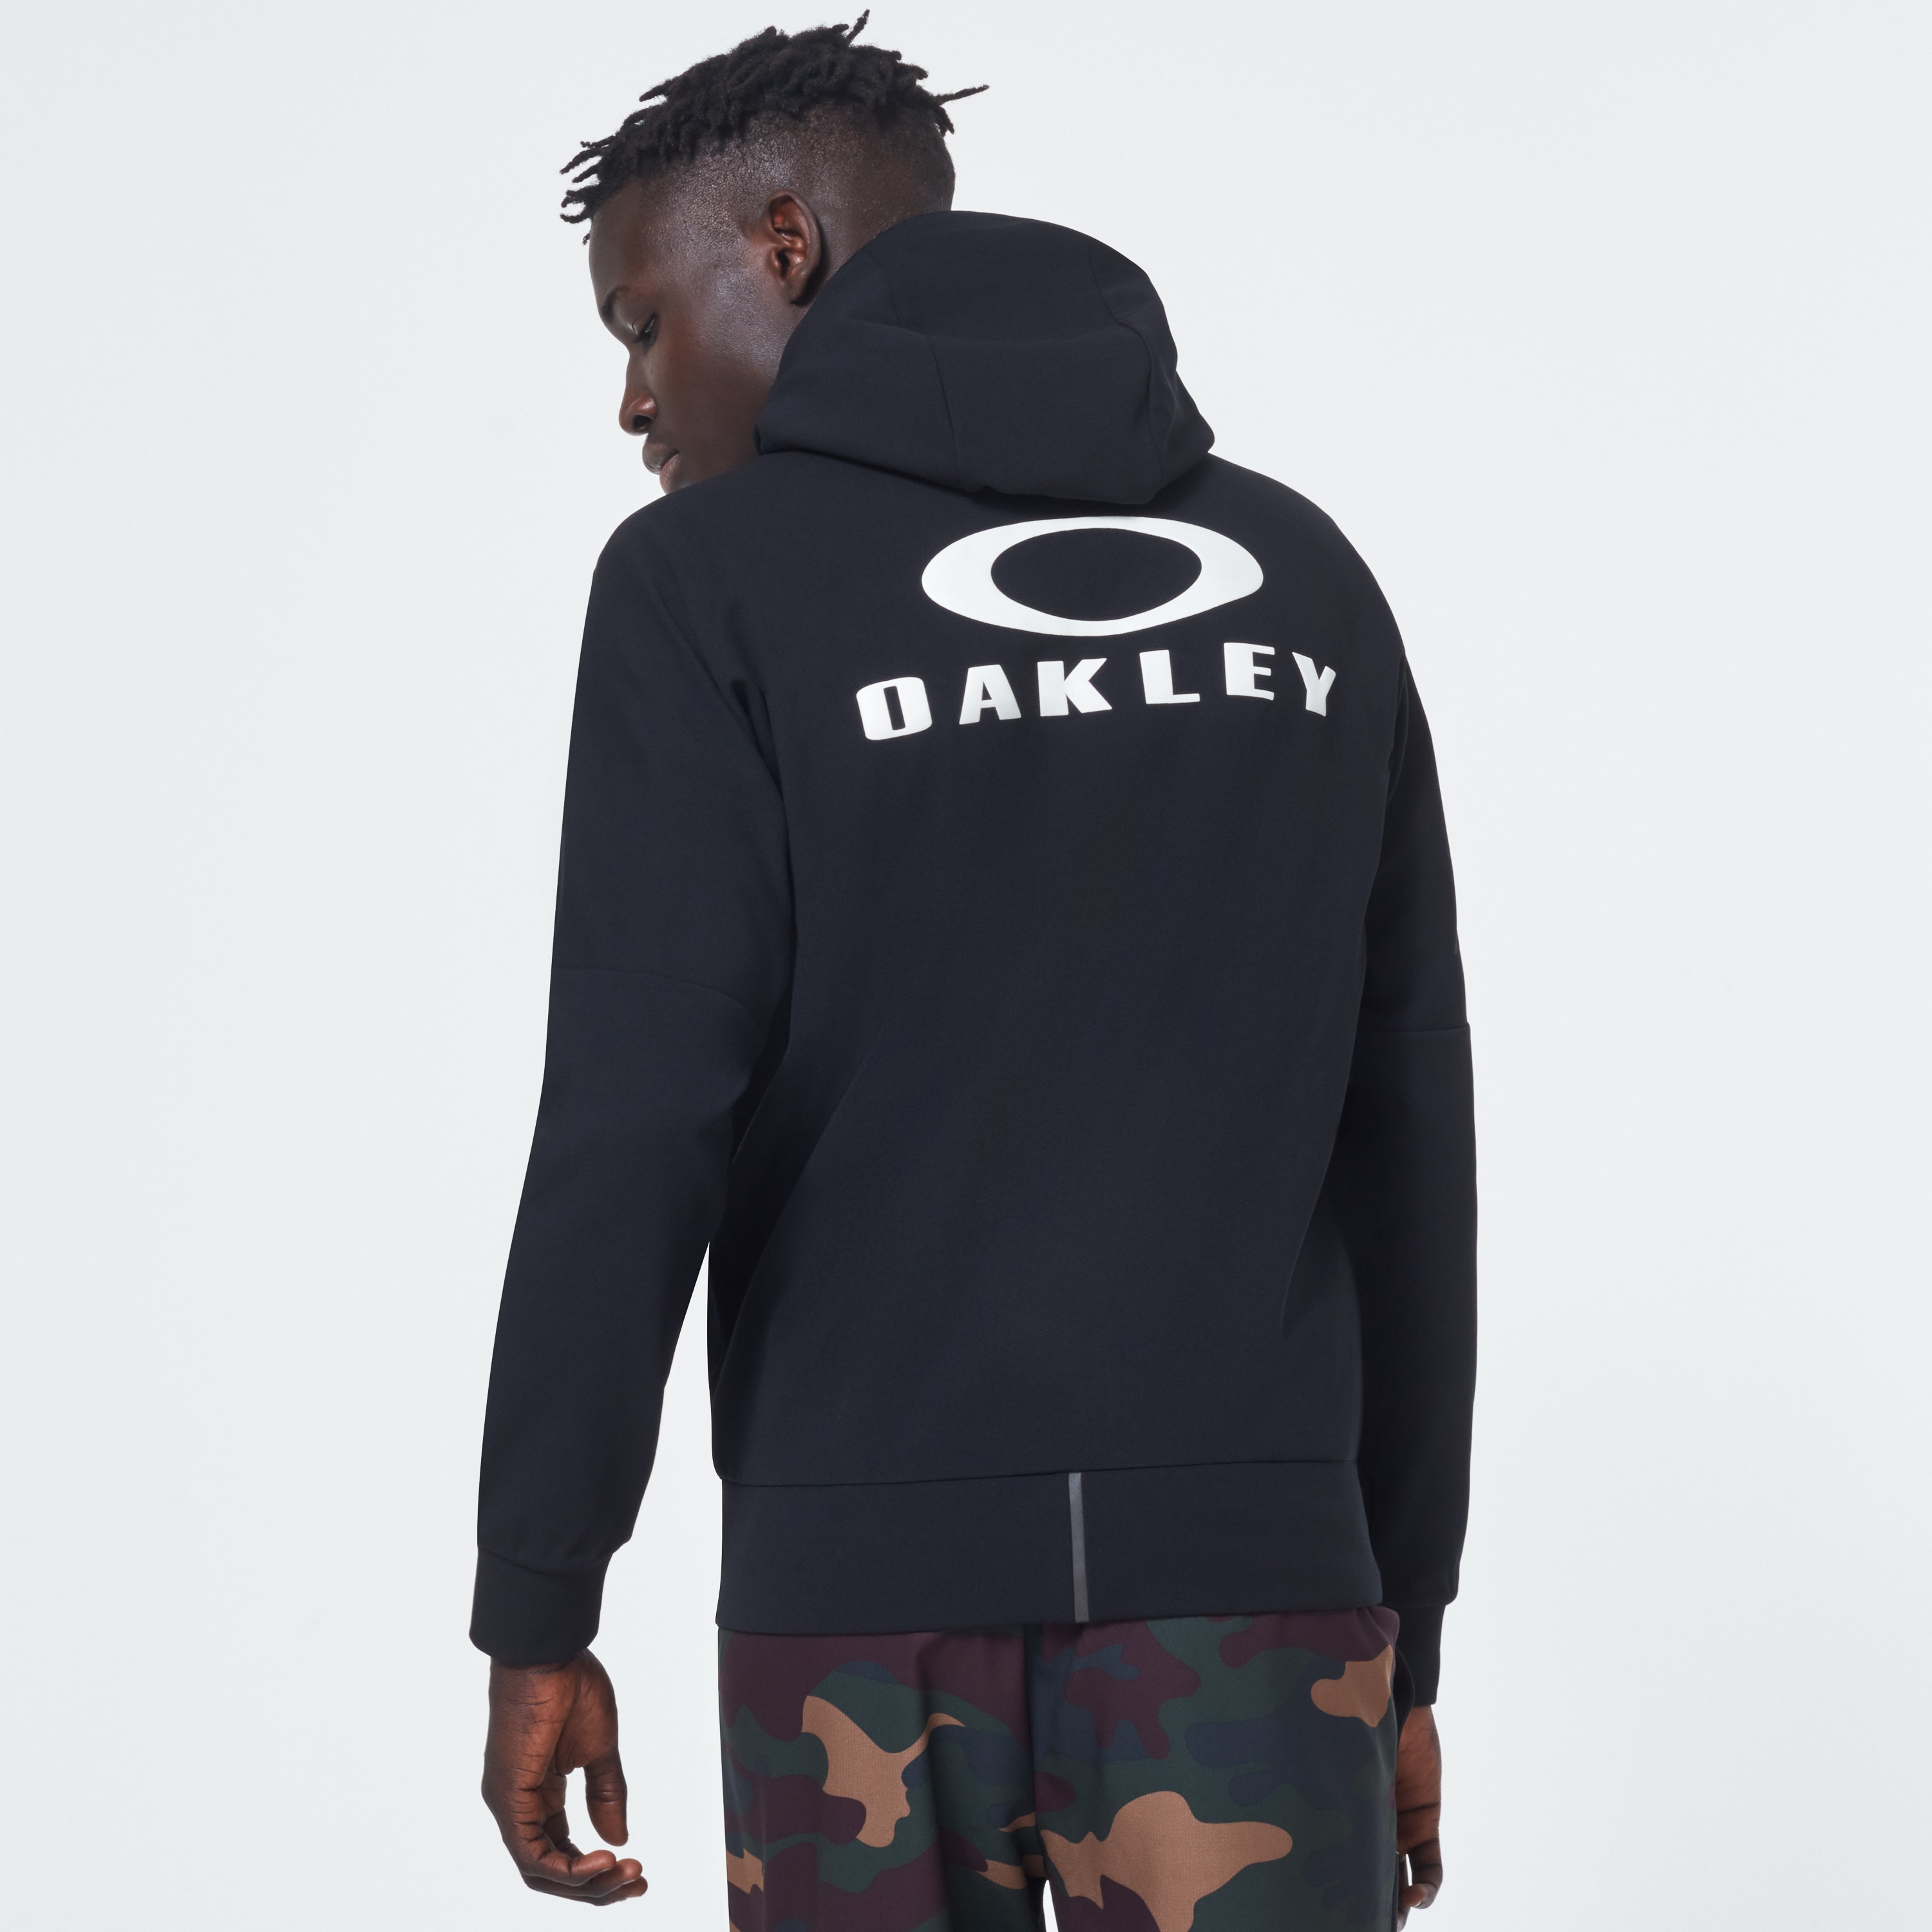 oakley fleece jacket